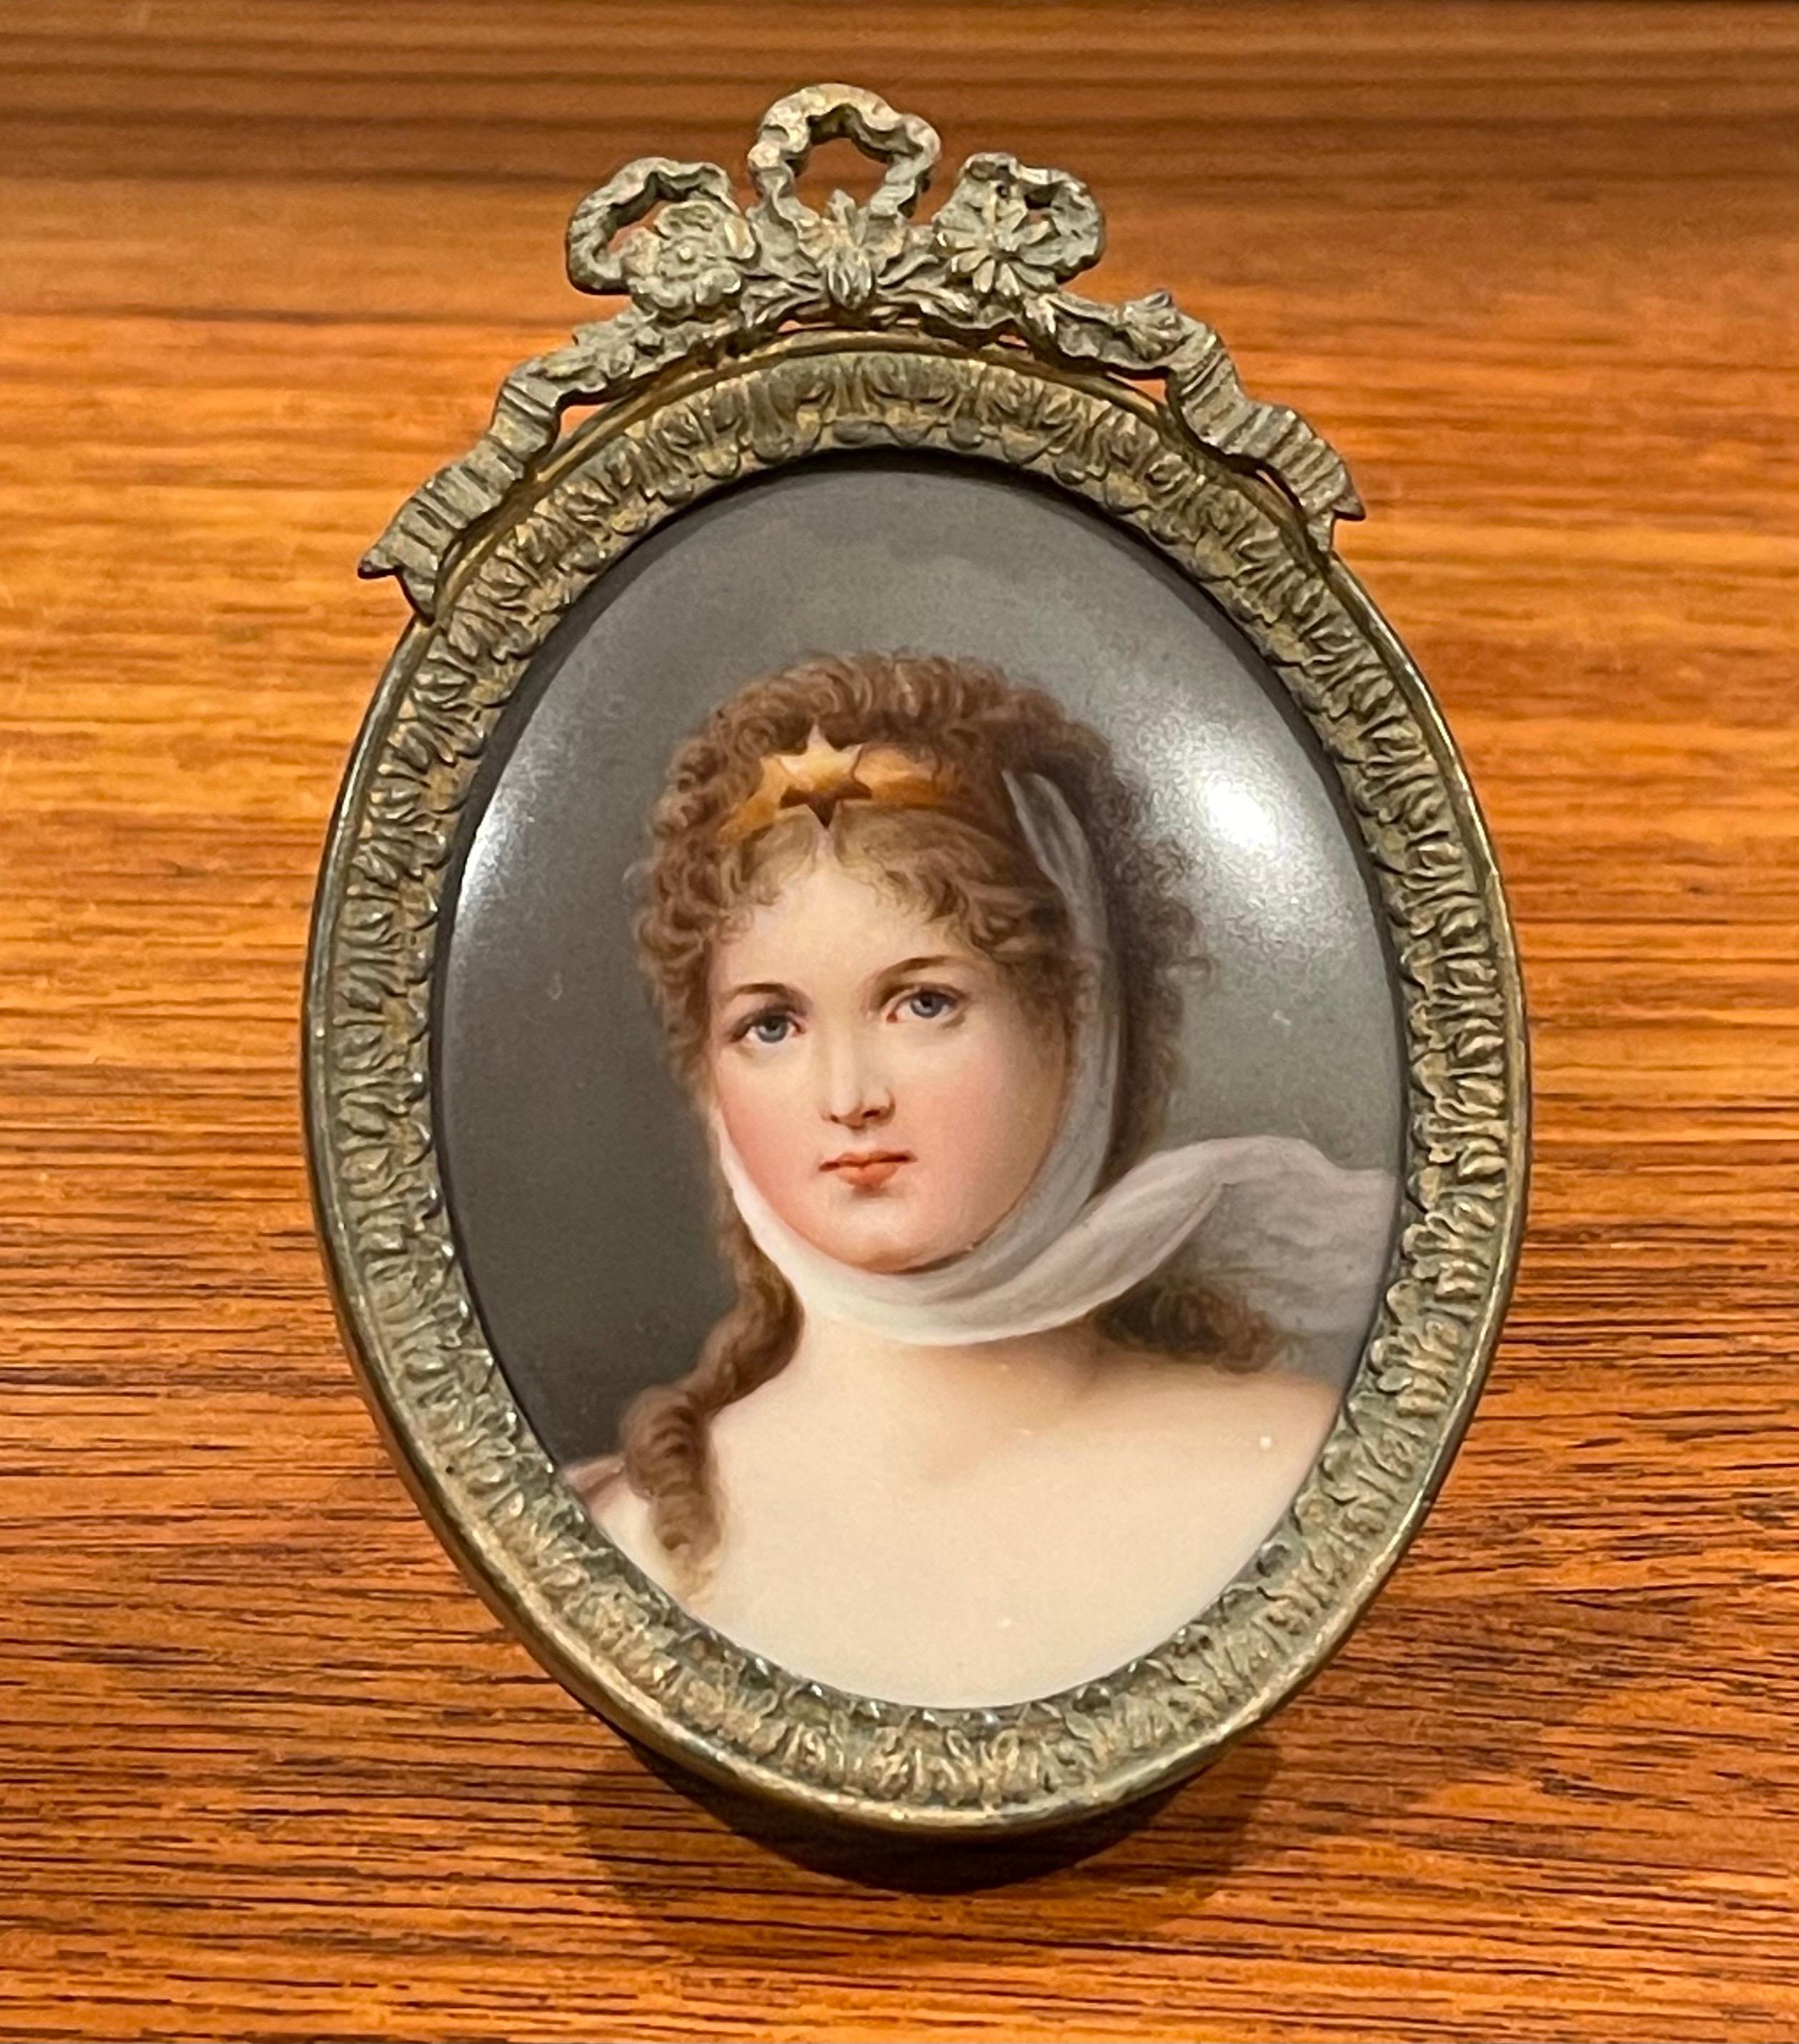 Un très beau portrait miniature ancien peint à la main sur porcelaine de la Princesse Louise d'Angleterre, vers 1900. Il s'agit très probablement d'une pièce 